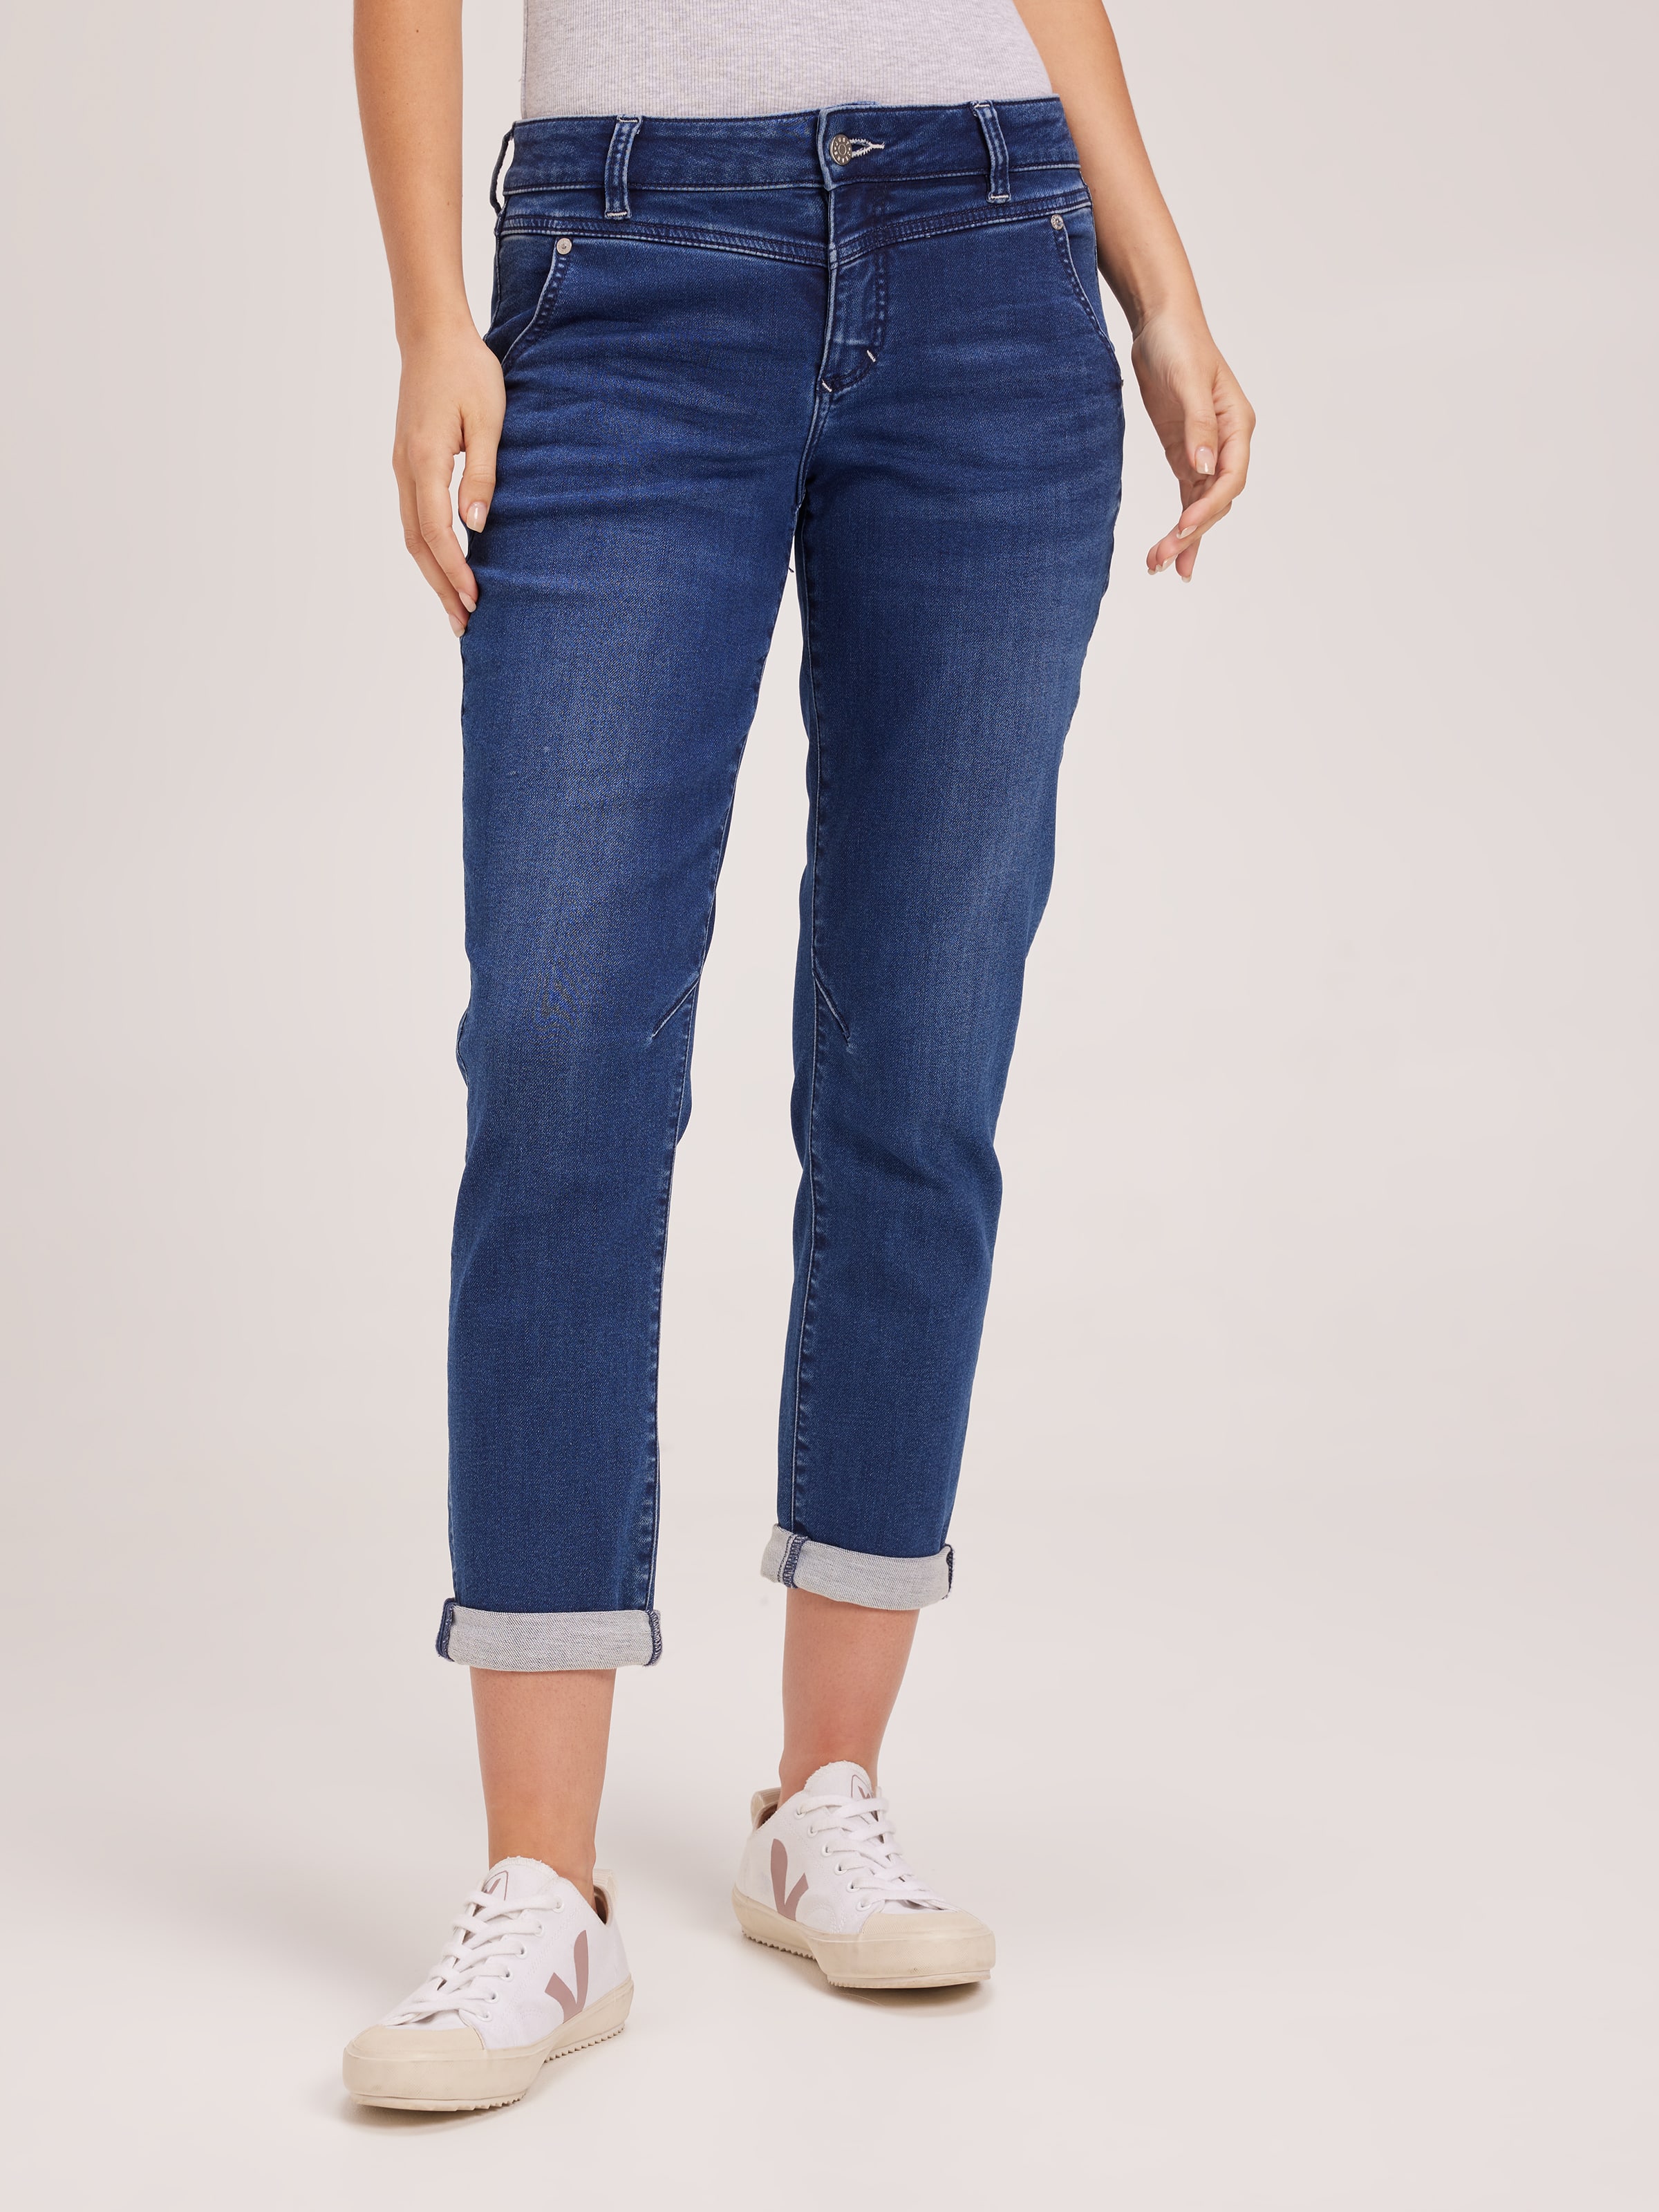 Levi Capris, Women's Size 10 Misses Jeans Denim, Classic Slim Fit Stretch